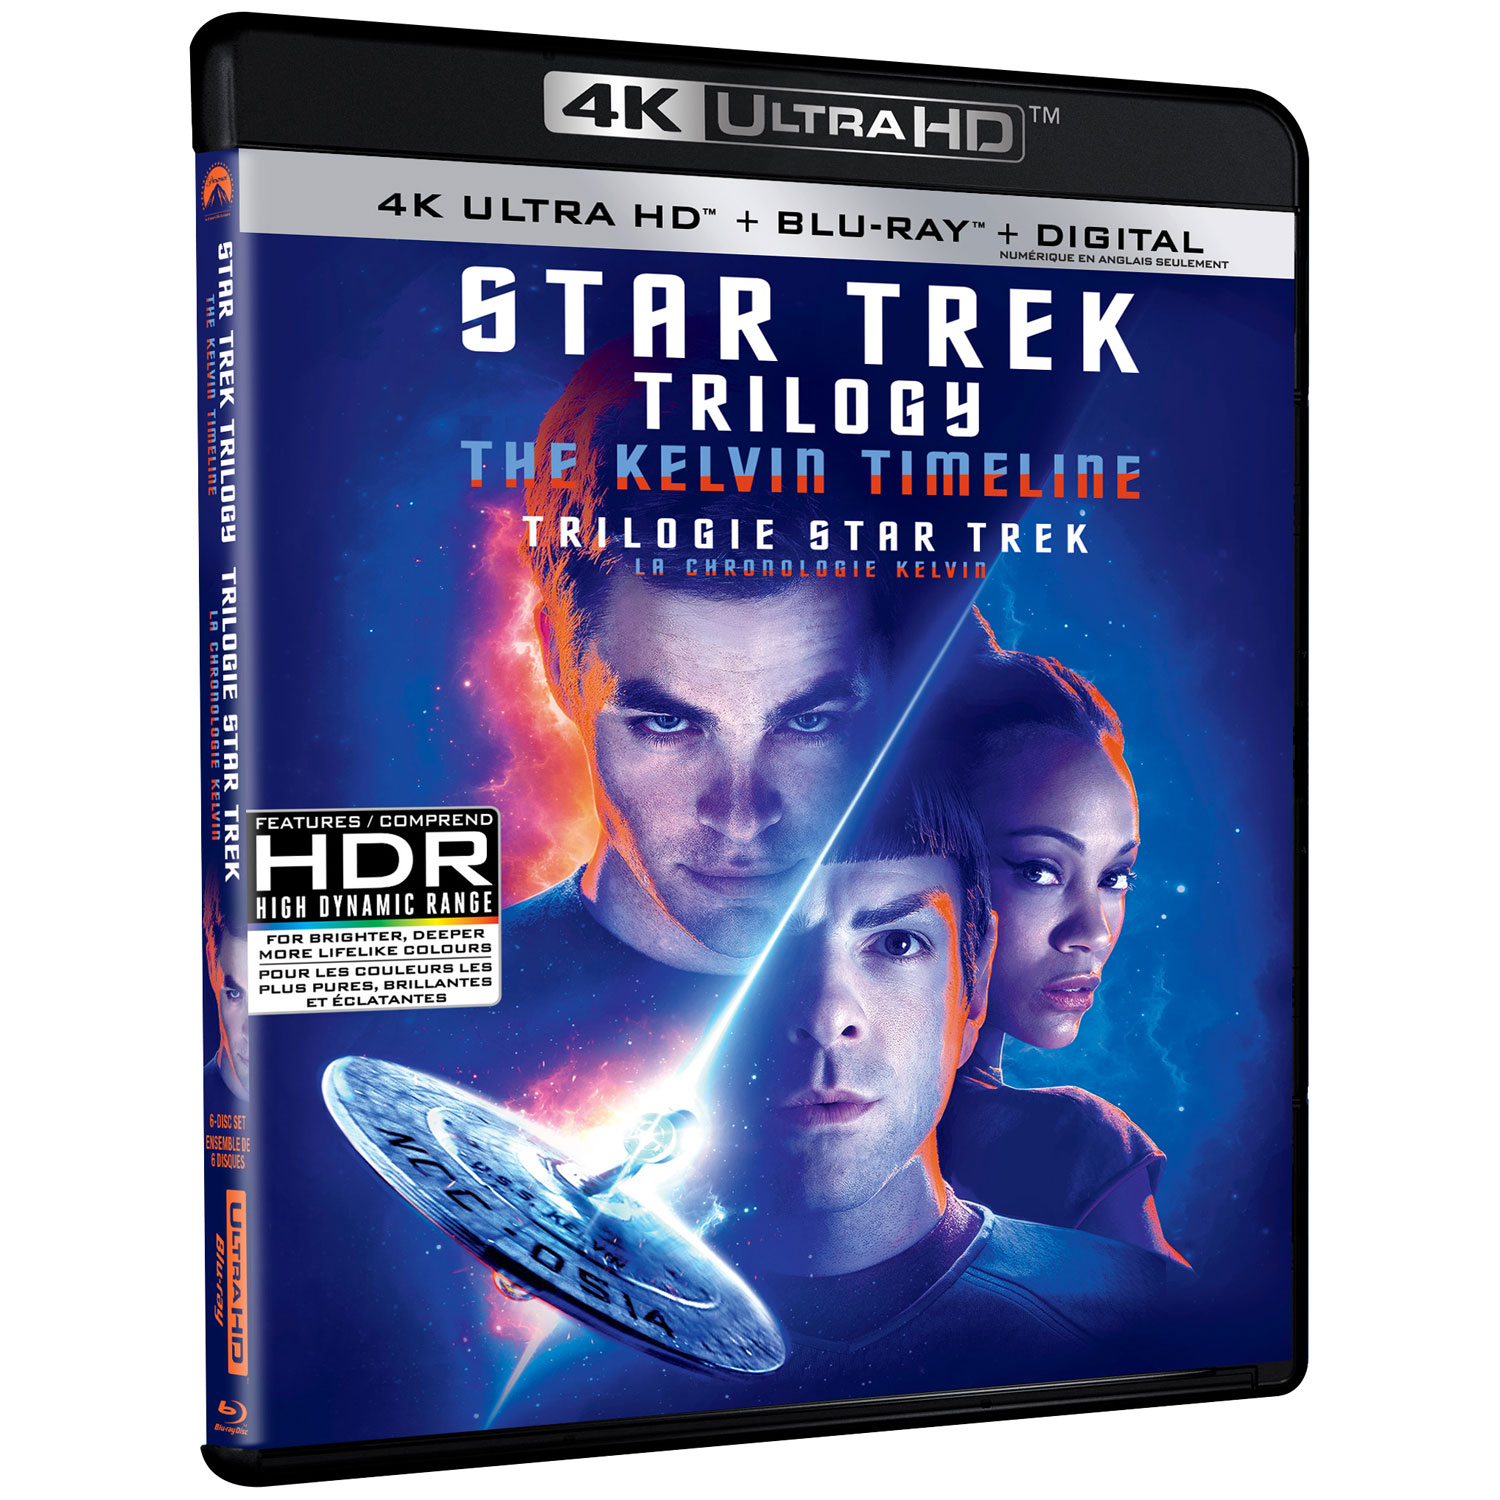 Star Trek Trilogy: The Kelvin Timeline (4K Ultra HD) (Blu-ray Combo)